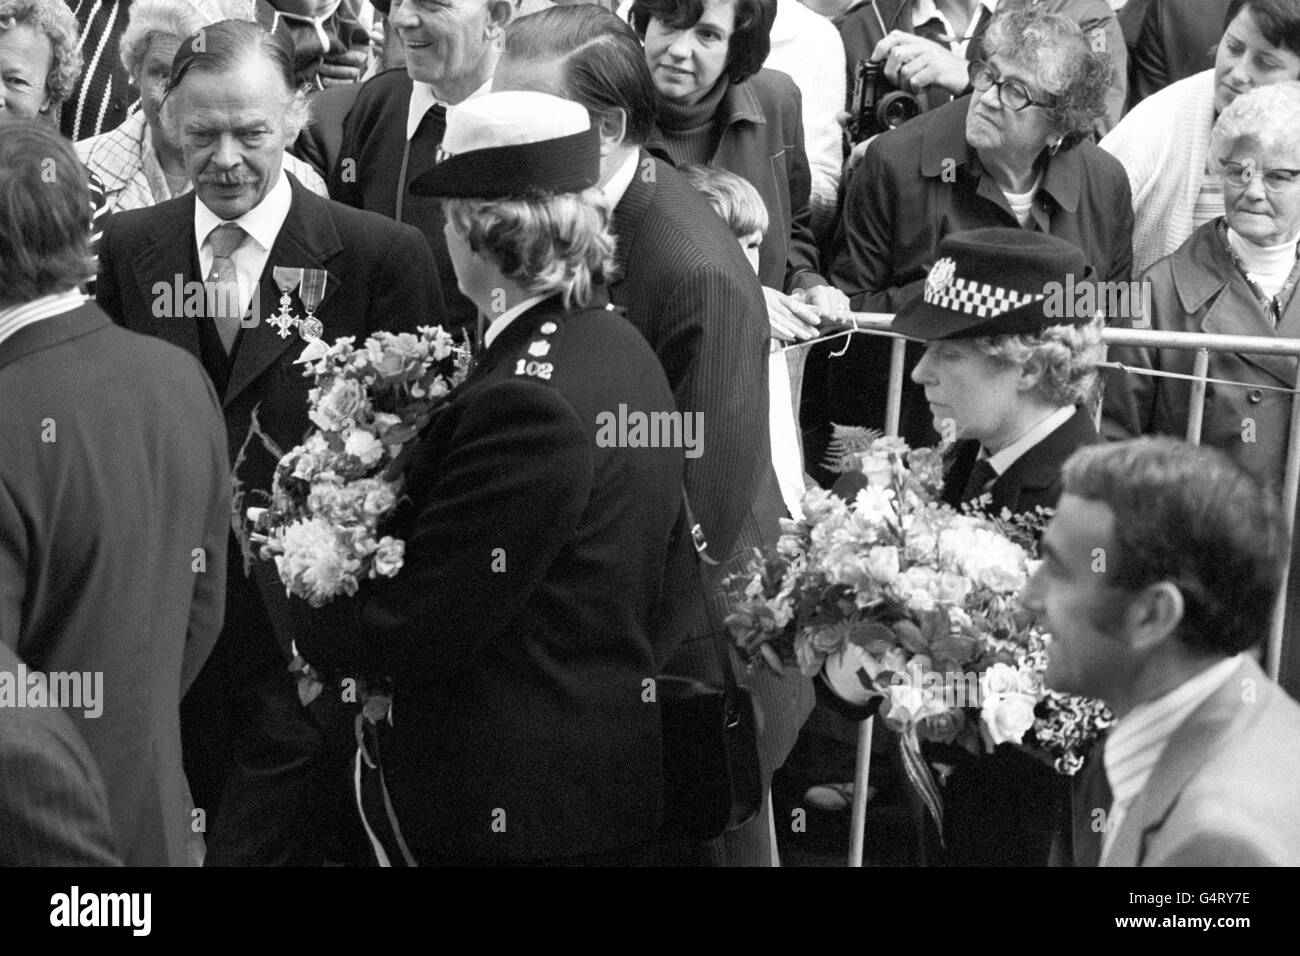 Ufficiali di polizia con armi piene di fiori che erano stati dati alla regina Elisabetta II in una passeggiata nel porto di San Pietro, durante la sua visita all'isola di Guernsey, Isole del canale. Foto Stock